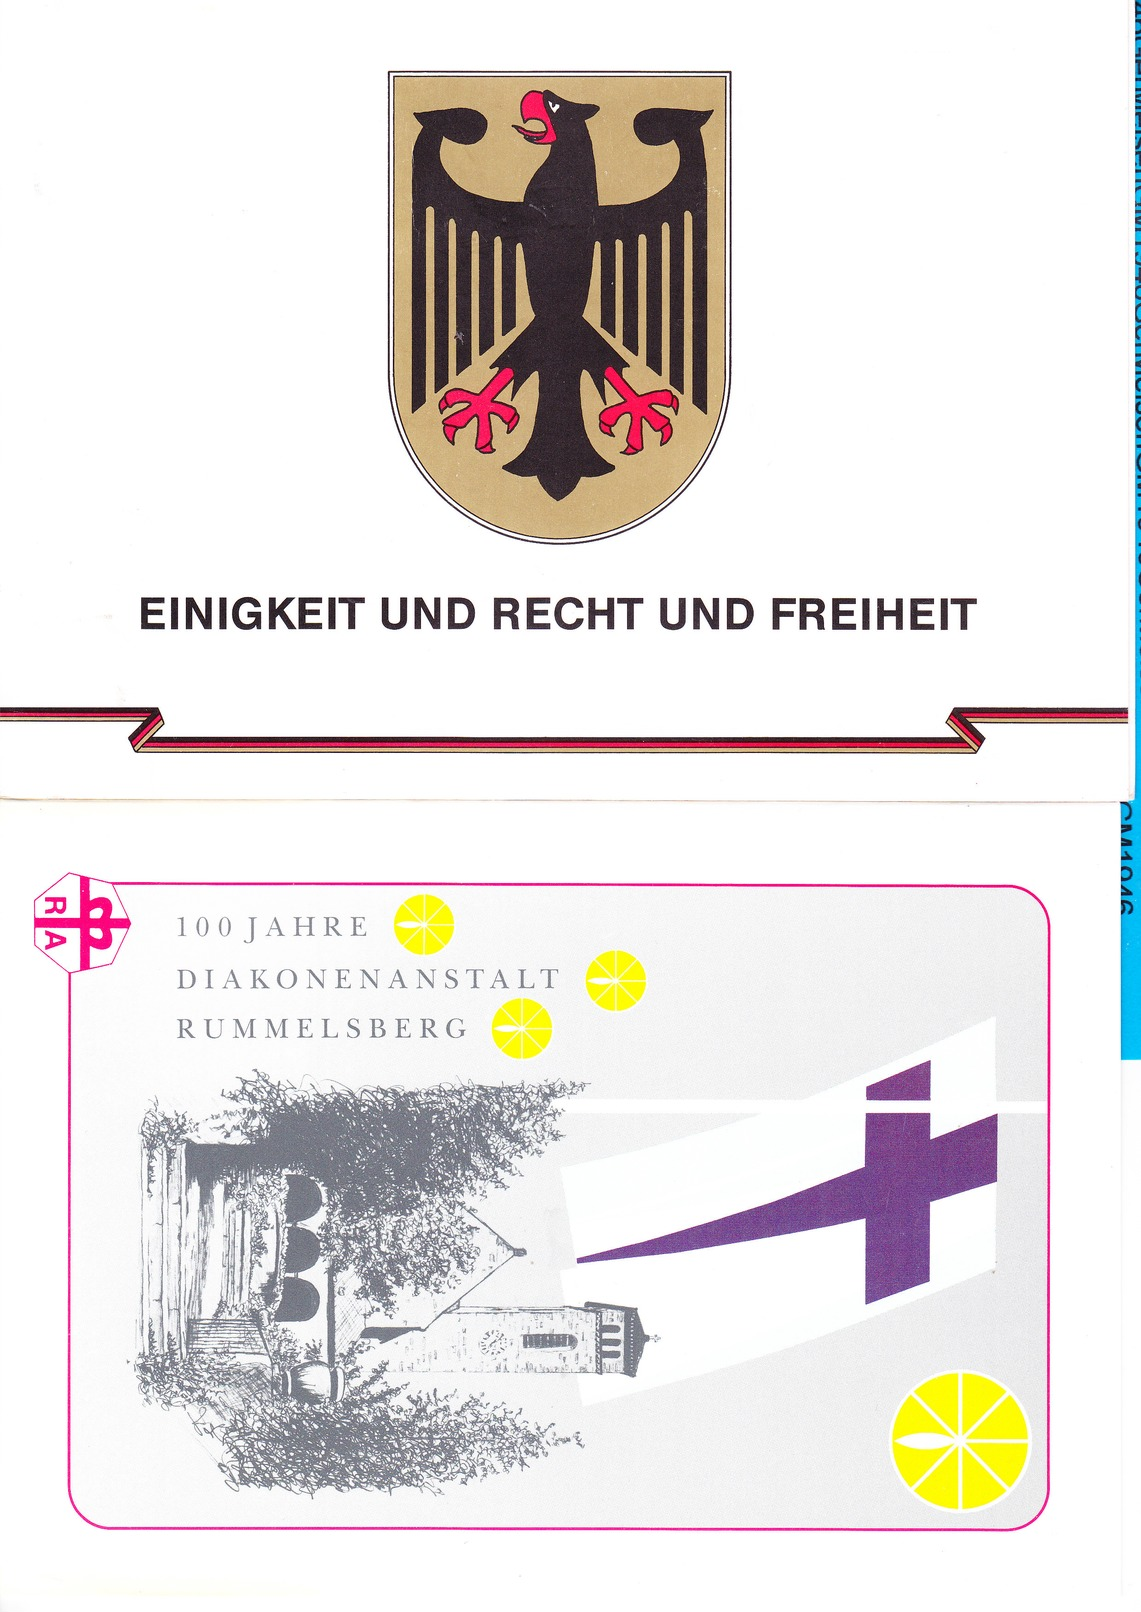 Germany B.R.D. 130 plus Souvenirkaarten & Vouwkaarten alles afgebeeld, start 1 euro